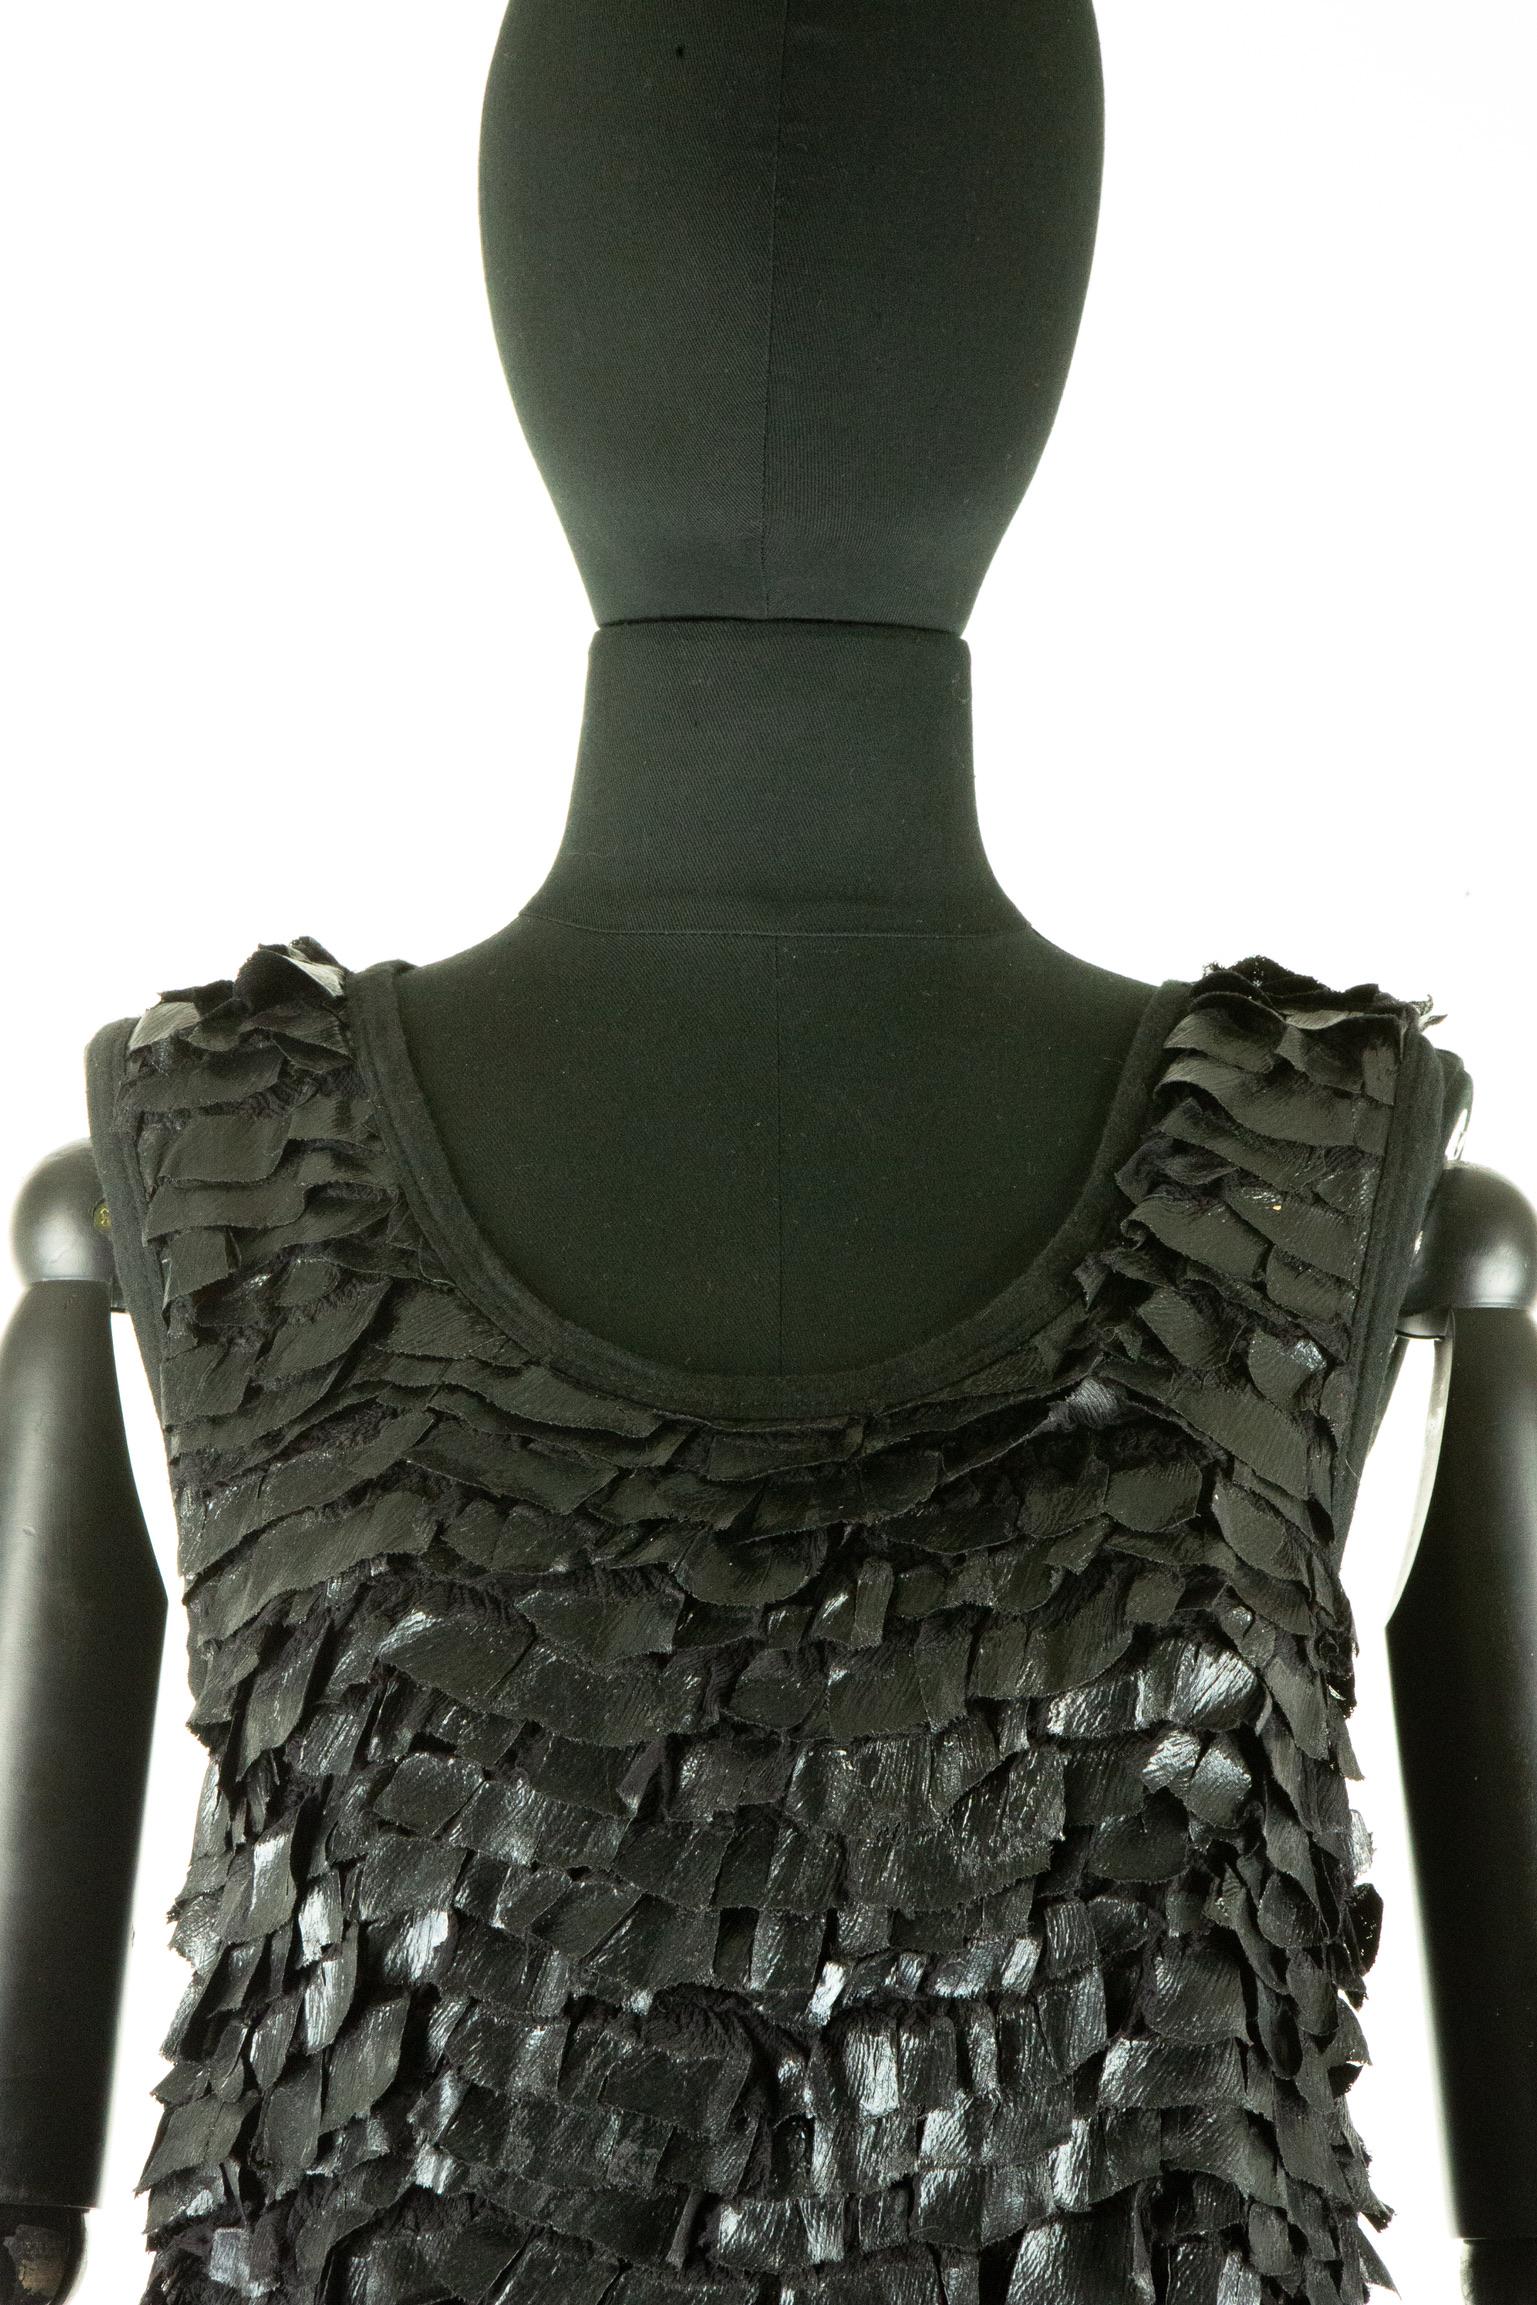 Dieses moderne Givenchy-Tank-Top hat plissierte Chiffonrüschen mit Lackdetails, die nur die Vorderseite des Mieders bedecken. Das Kleidungsstück hat außerdem einen Rundhalsausschnitt und einen Rücken aus schwarzem Jersey. Dieser Artikel trägt das